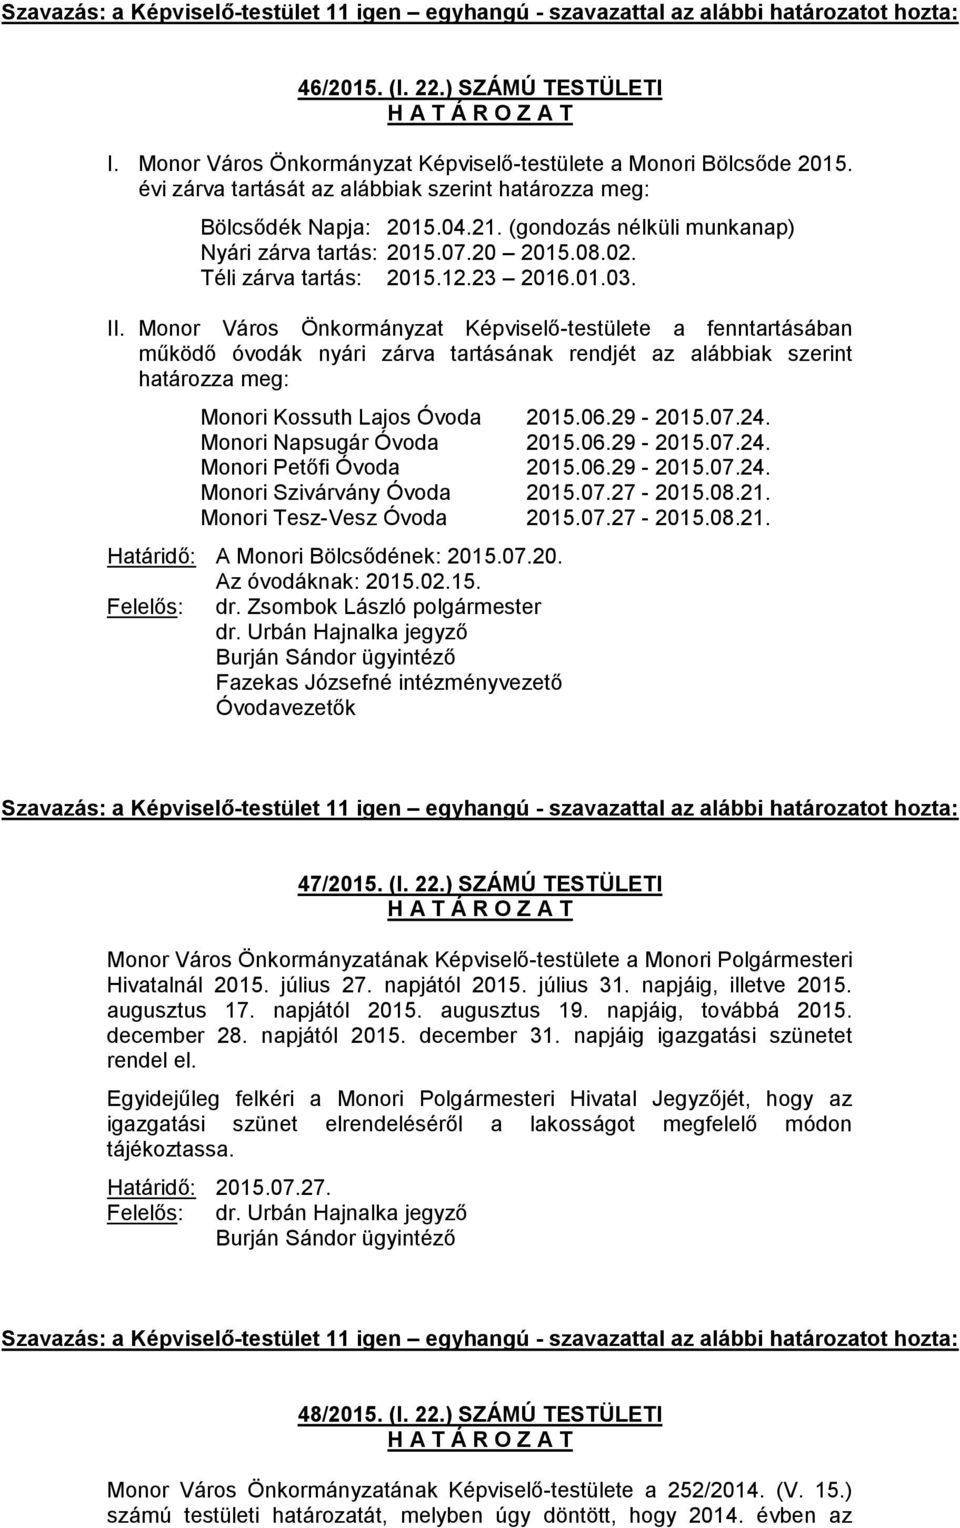 Monor Város Önkormányzat Képviselő-testülete a fenntartásában működő óvodák nyári zárva tartásának rendjét az alábbiak szerint határozza meg: Monori Kossuth Lajos Óvoda 2015.06.29-2015.07.24.